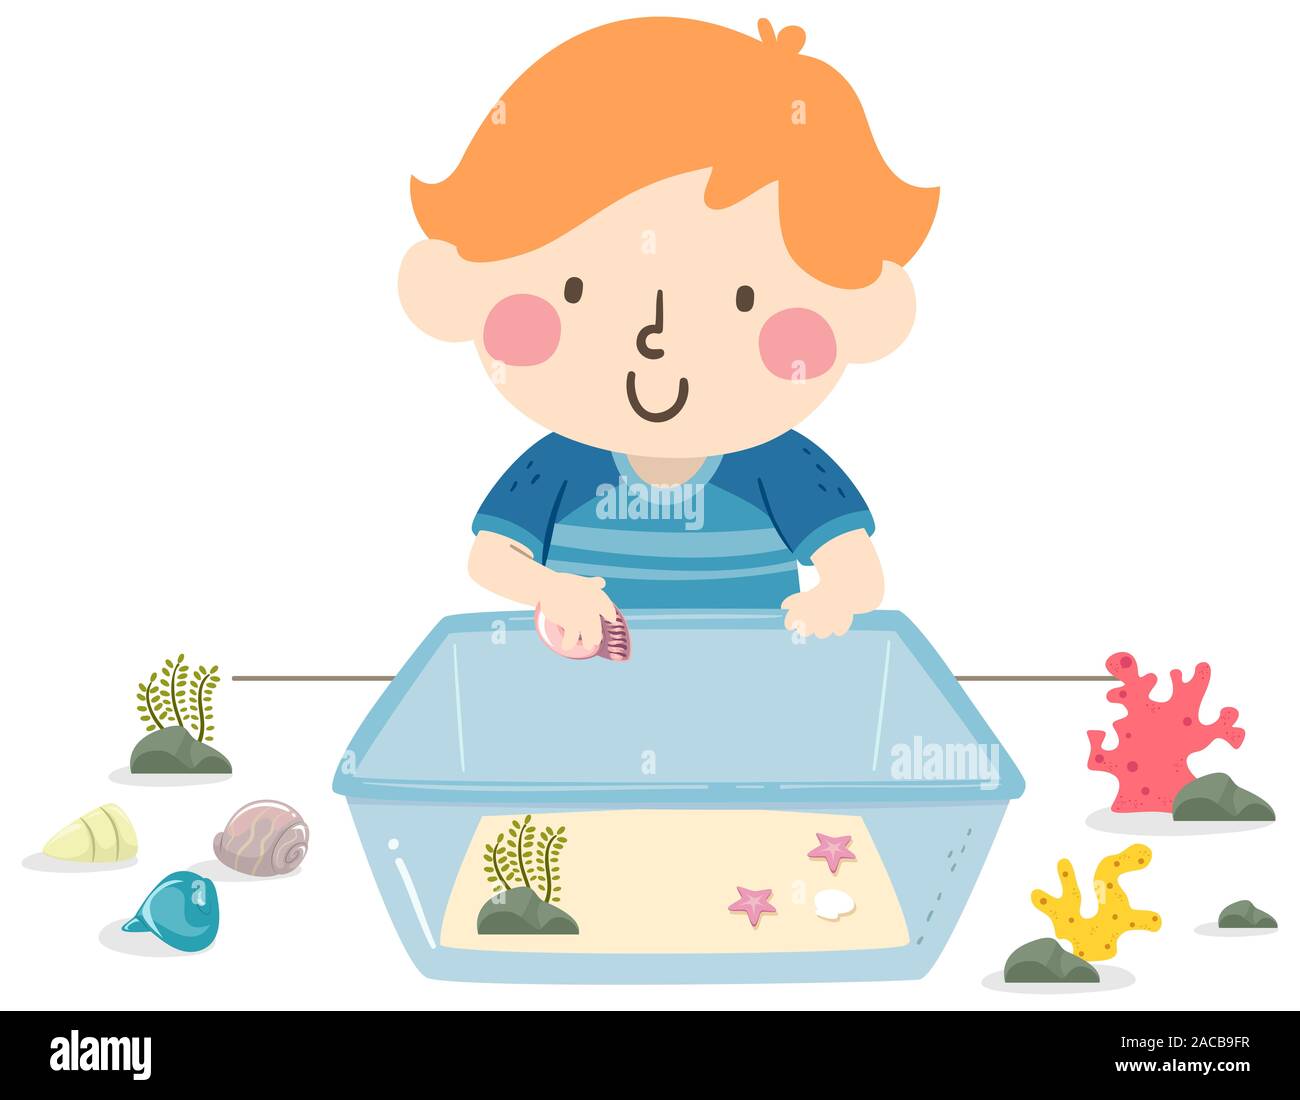 Illustration d'un enfant garçon construit son propre aquarium, placer du sable, coquillages et plantes Banque D'Images